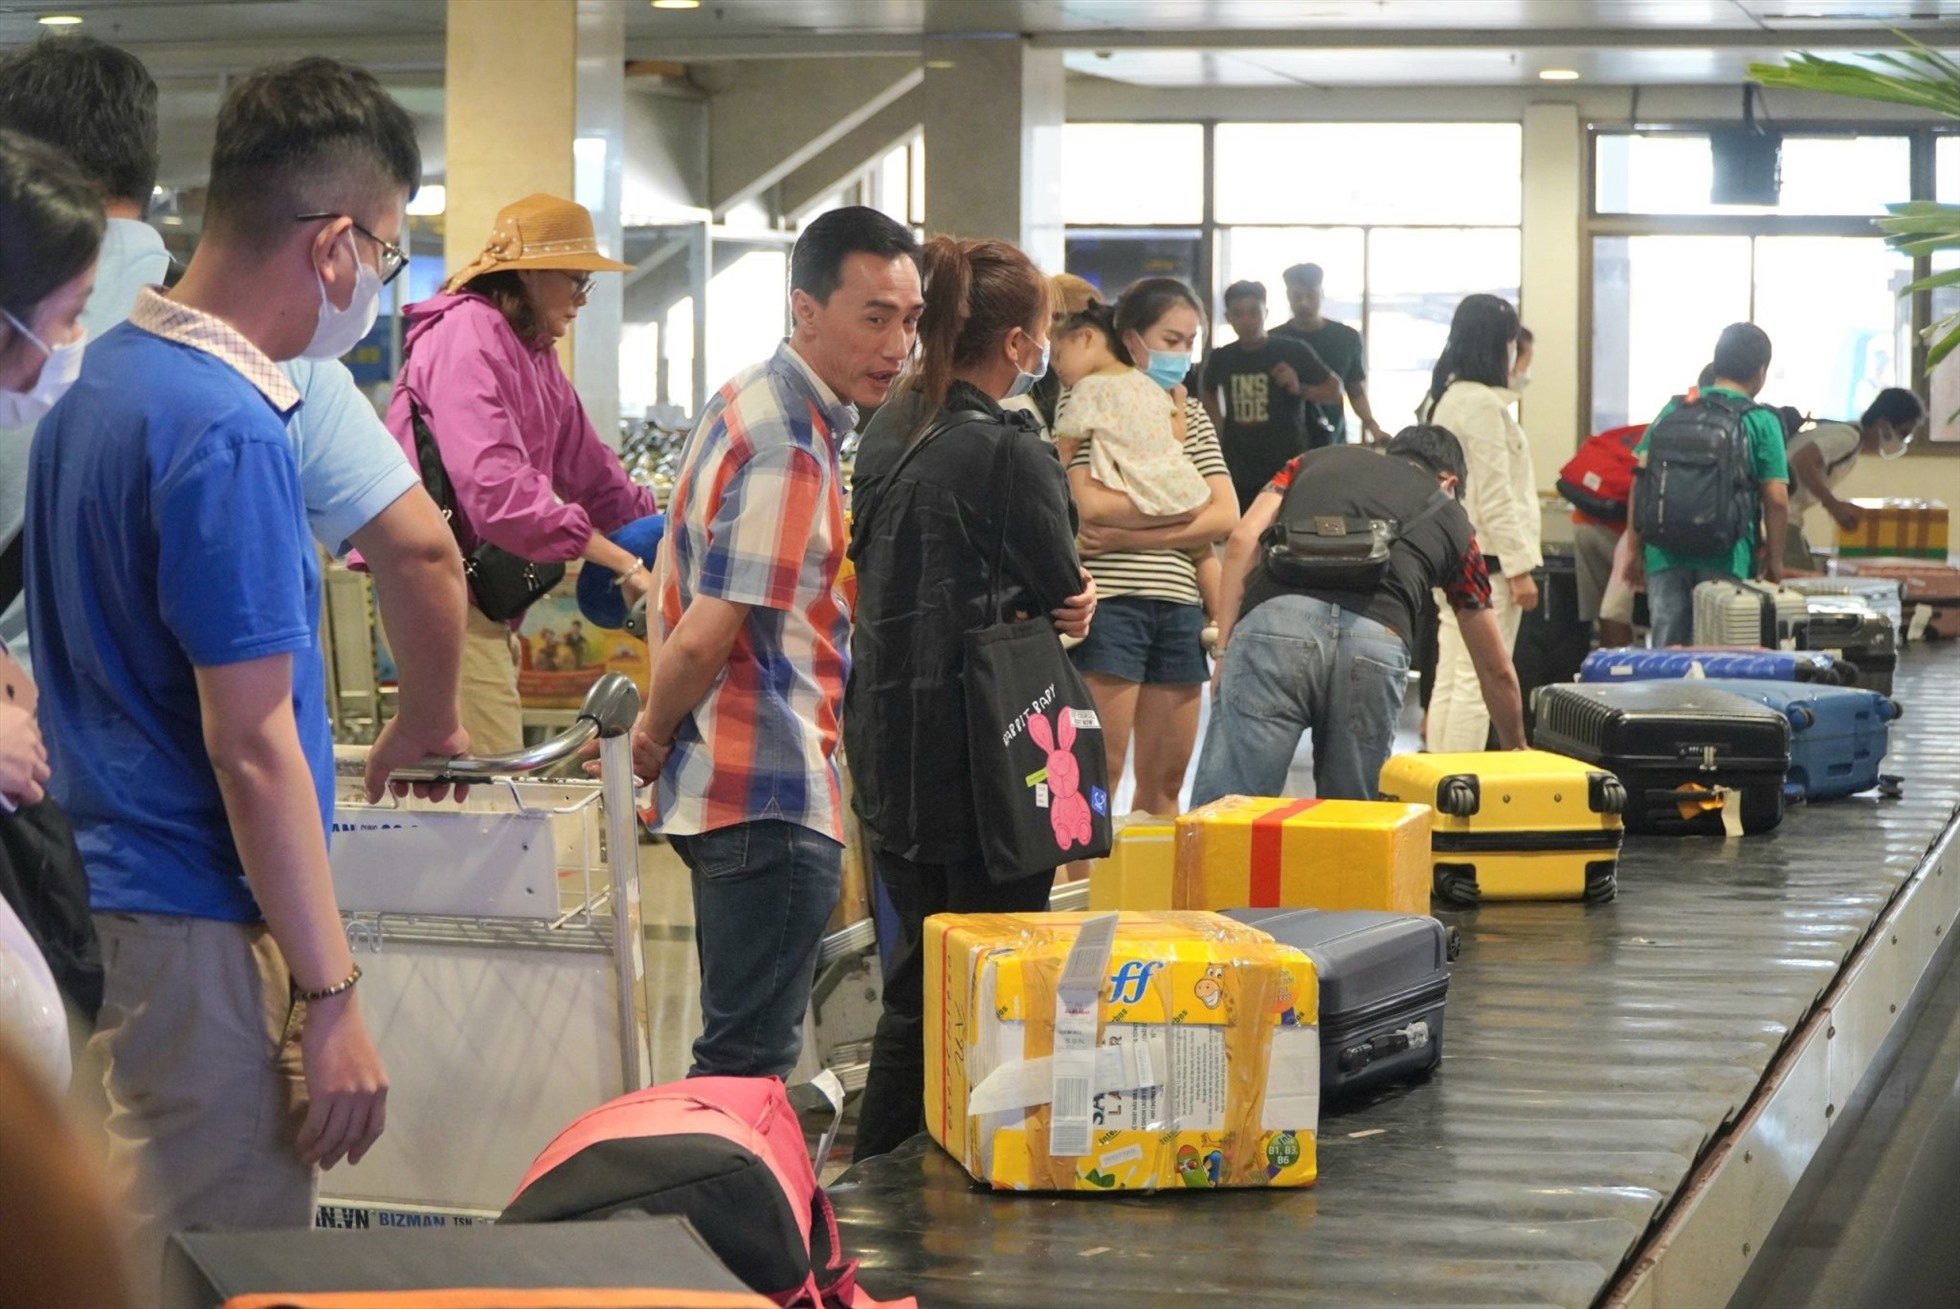 Trong ngày 3.5 - ngày cuối cùng của kỳ nghỉ lễ, sân bay Tân Sơn Nhất đón 129.450 lượt khách với 759 chuyến bay đi và đến. Trong đó, 41.926 khách quốc tế và 87.524 khách nội địa. Đây là ngày mà số chuyến bay cũng sản lượng khách qua sân bay Tân Sơn Nhất cao nhất trong 6 ngày cao điểm nghỉ lễ từ 28.4-3.5 theo thống kê và dự báo từ Cảng Hàng không quốc tế Tân Sơn Nhất.